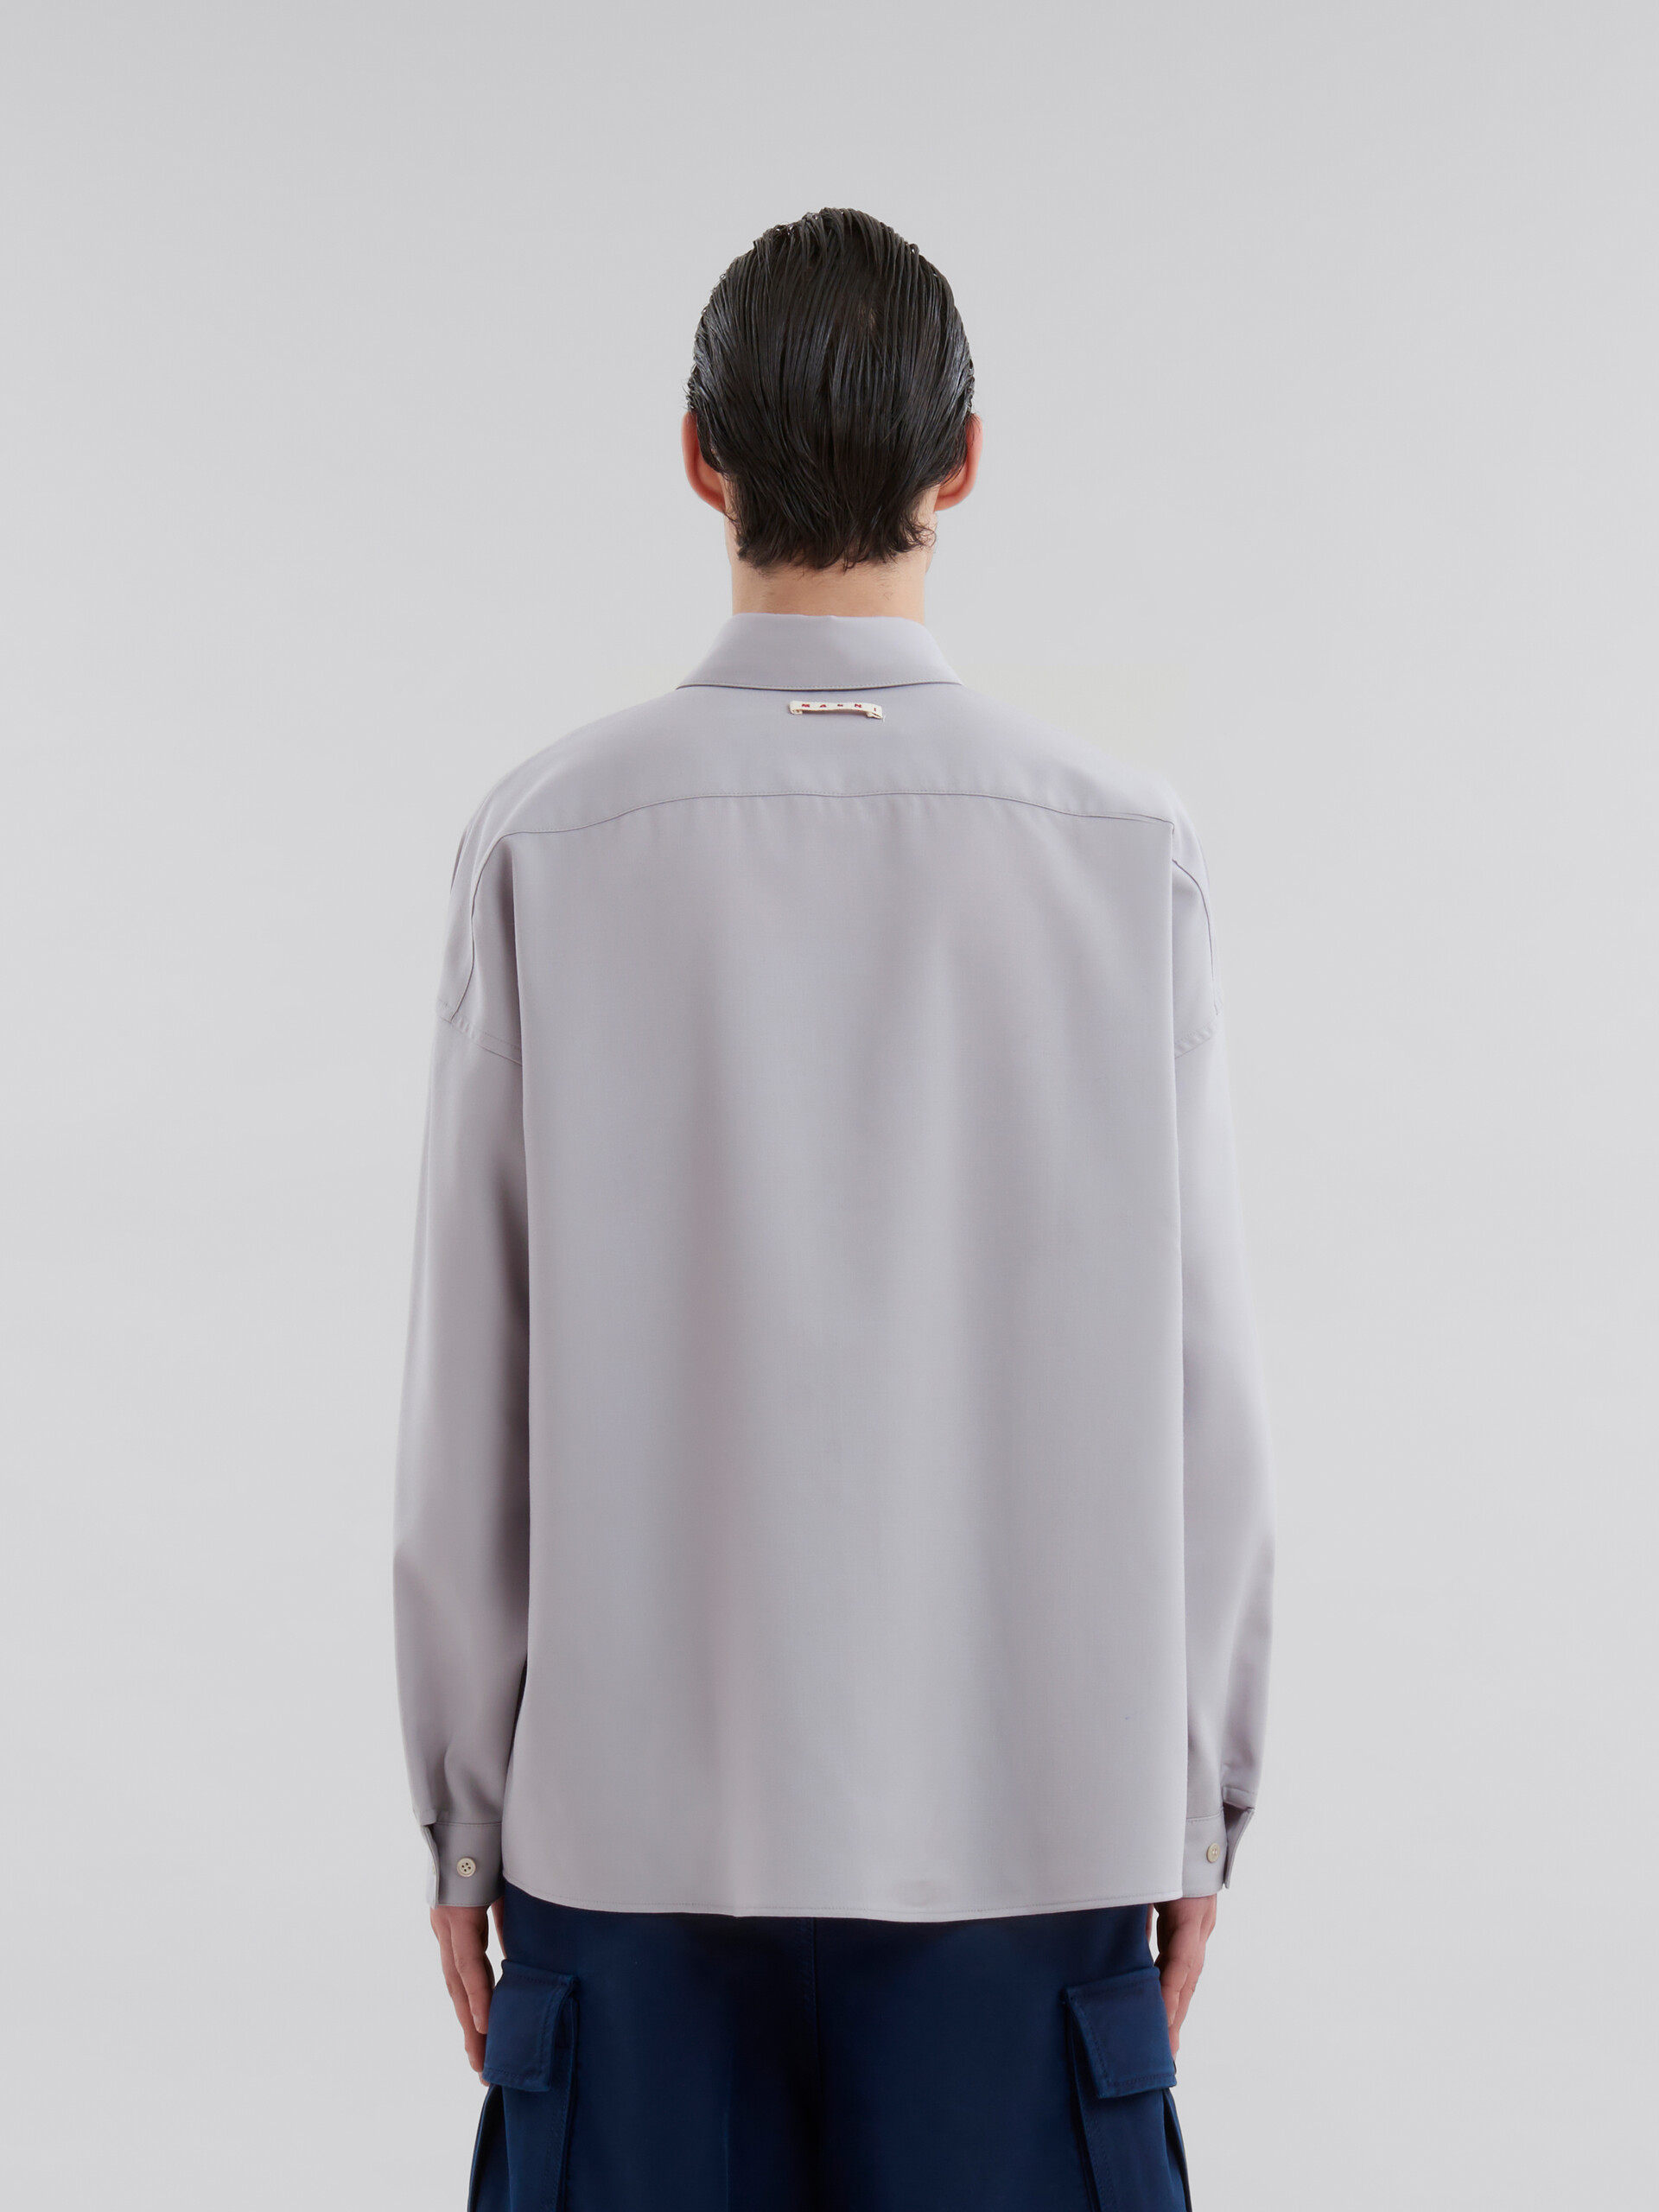 Camisa de lana tropical azul intenso con manga larga - Camisas - Image 3